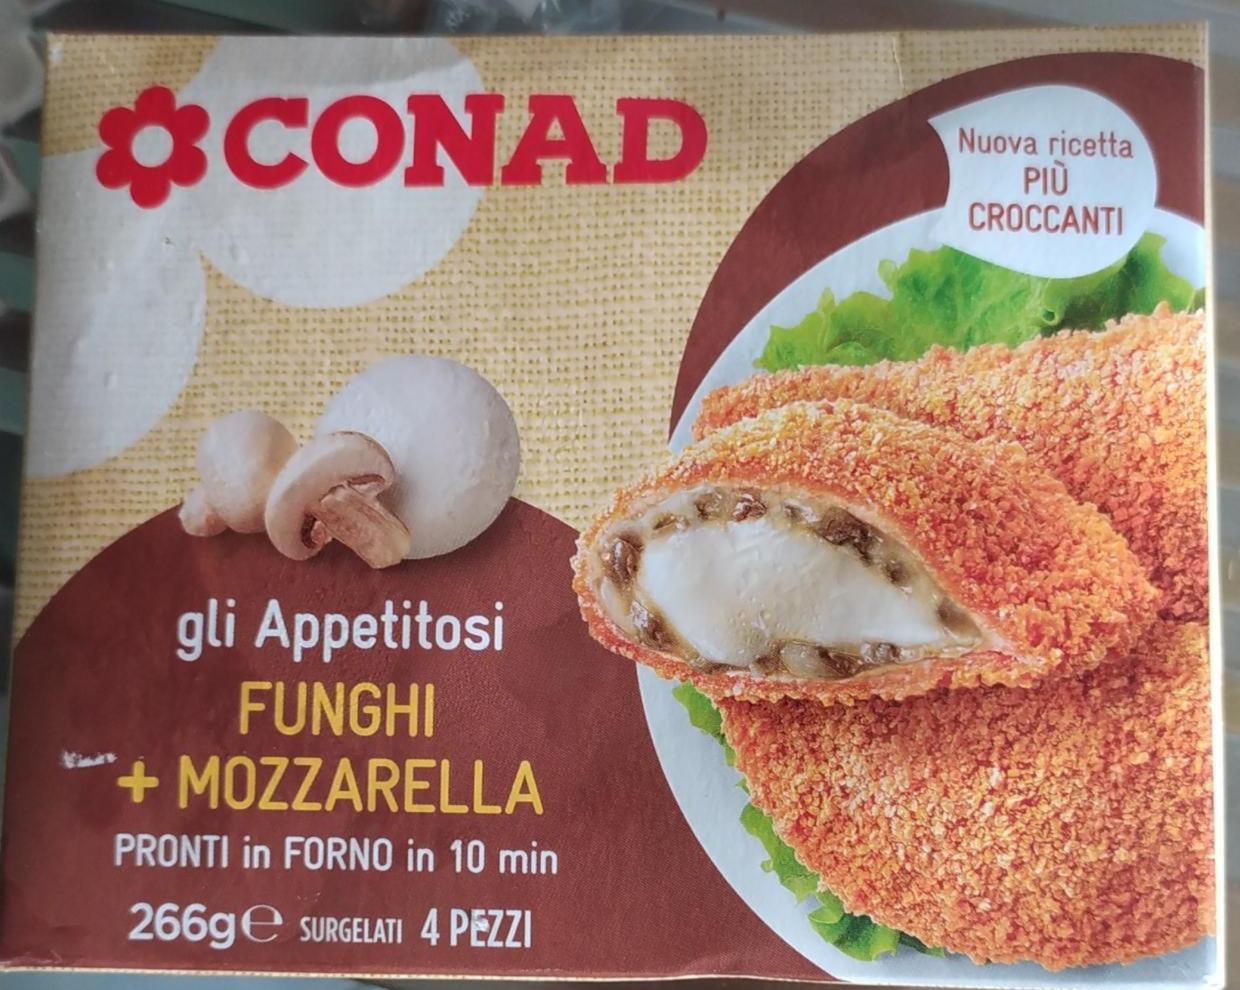 Fotografie - Gli Appetitosi Funghi + Mozzarella Conad